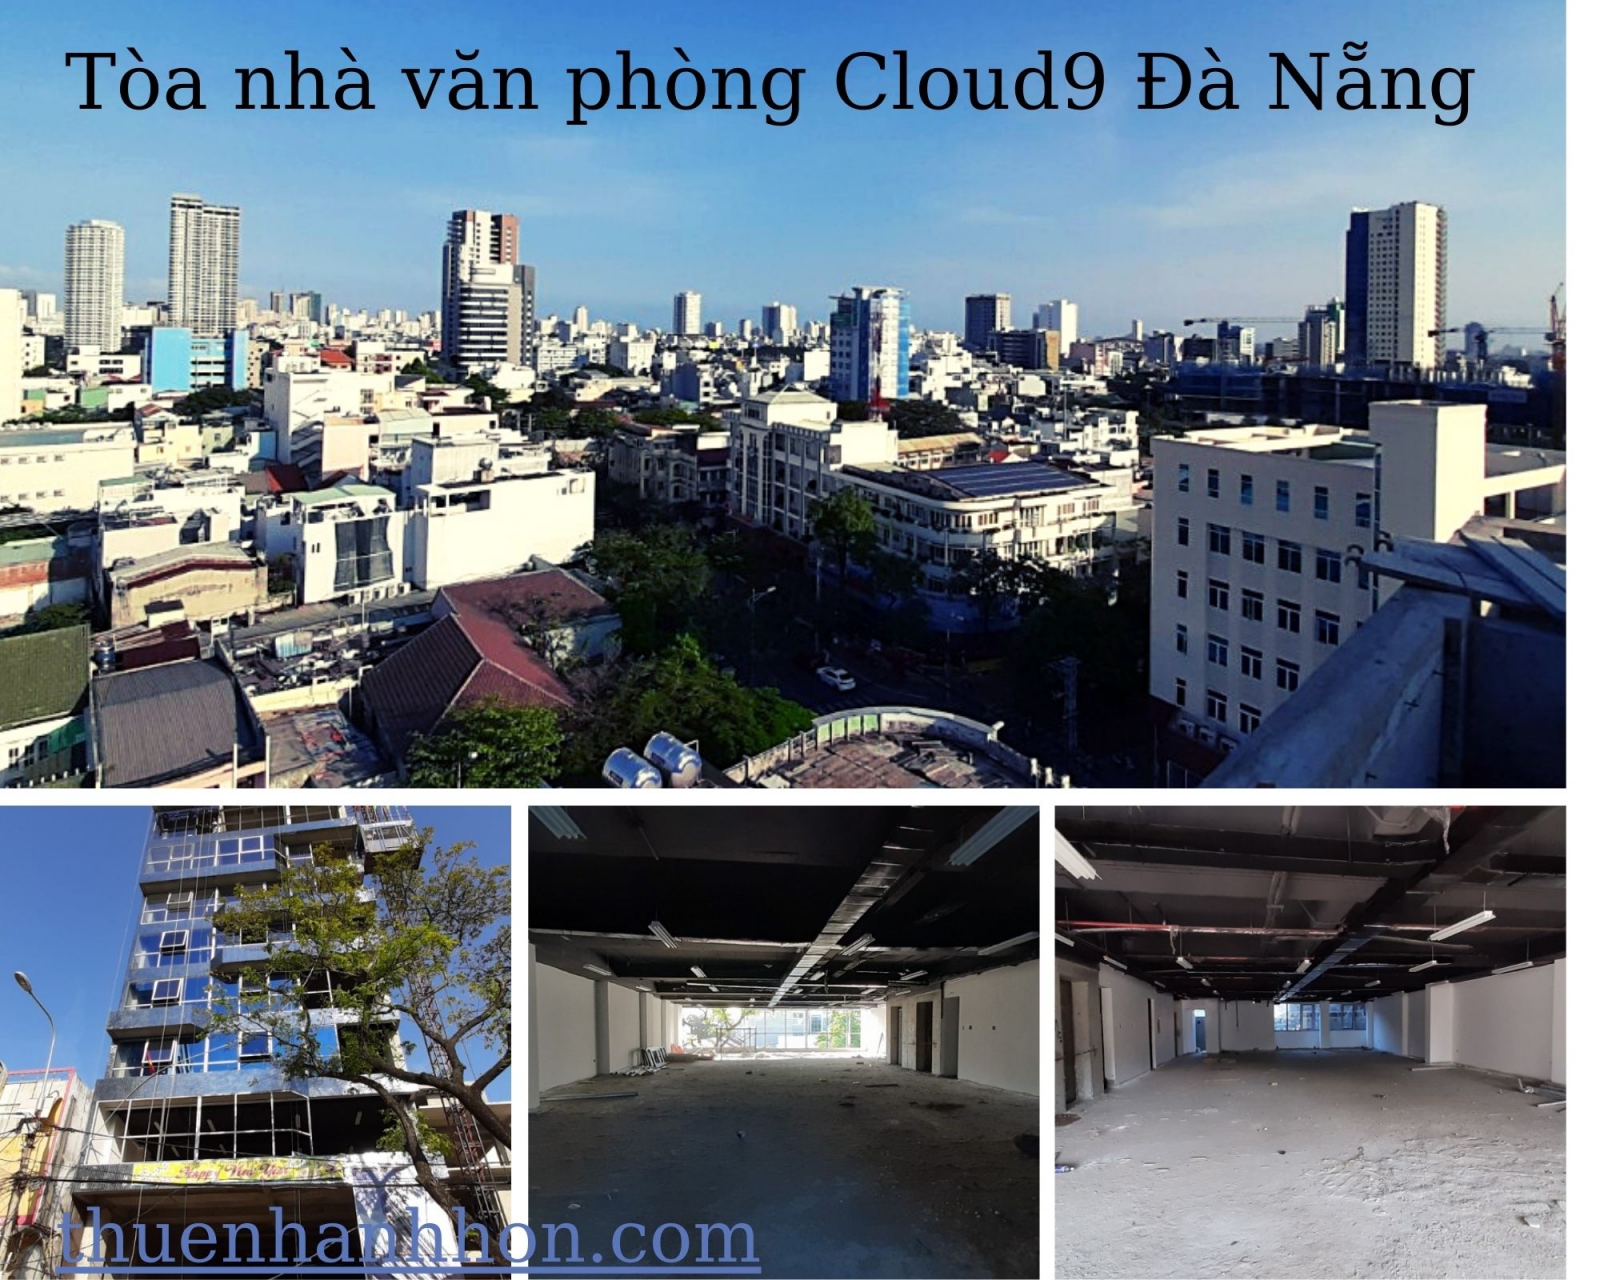 chuyên cho thuê văn phòng Đà Nẵng, tòa nhà Cloud 9 